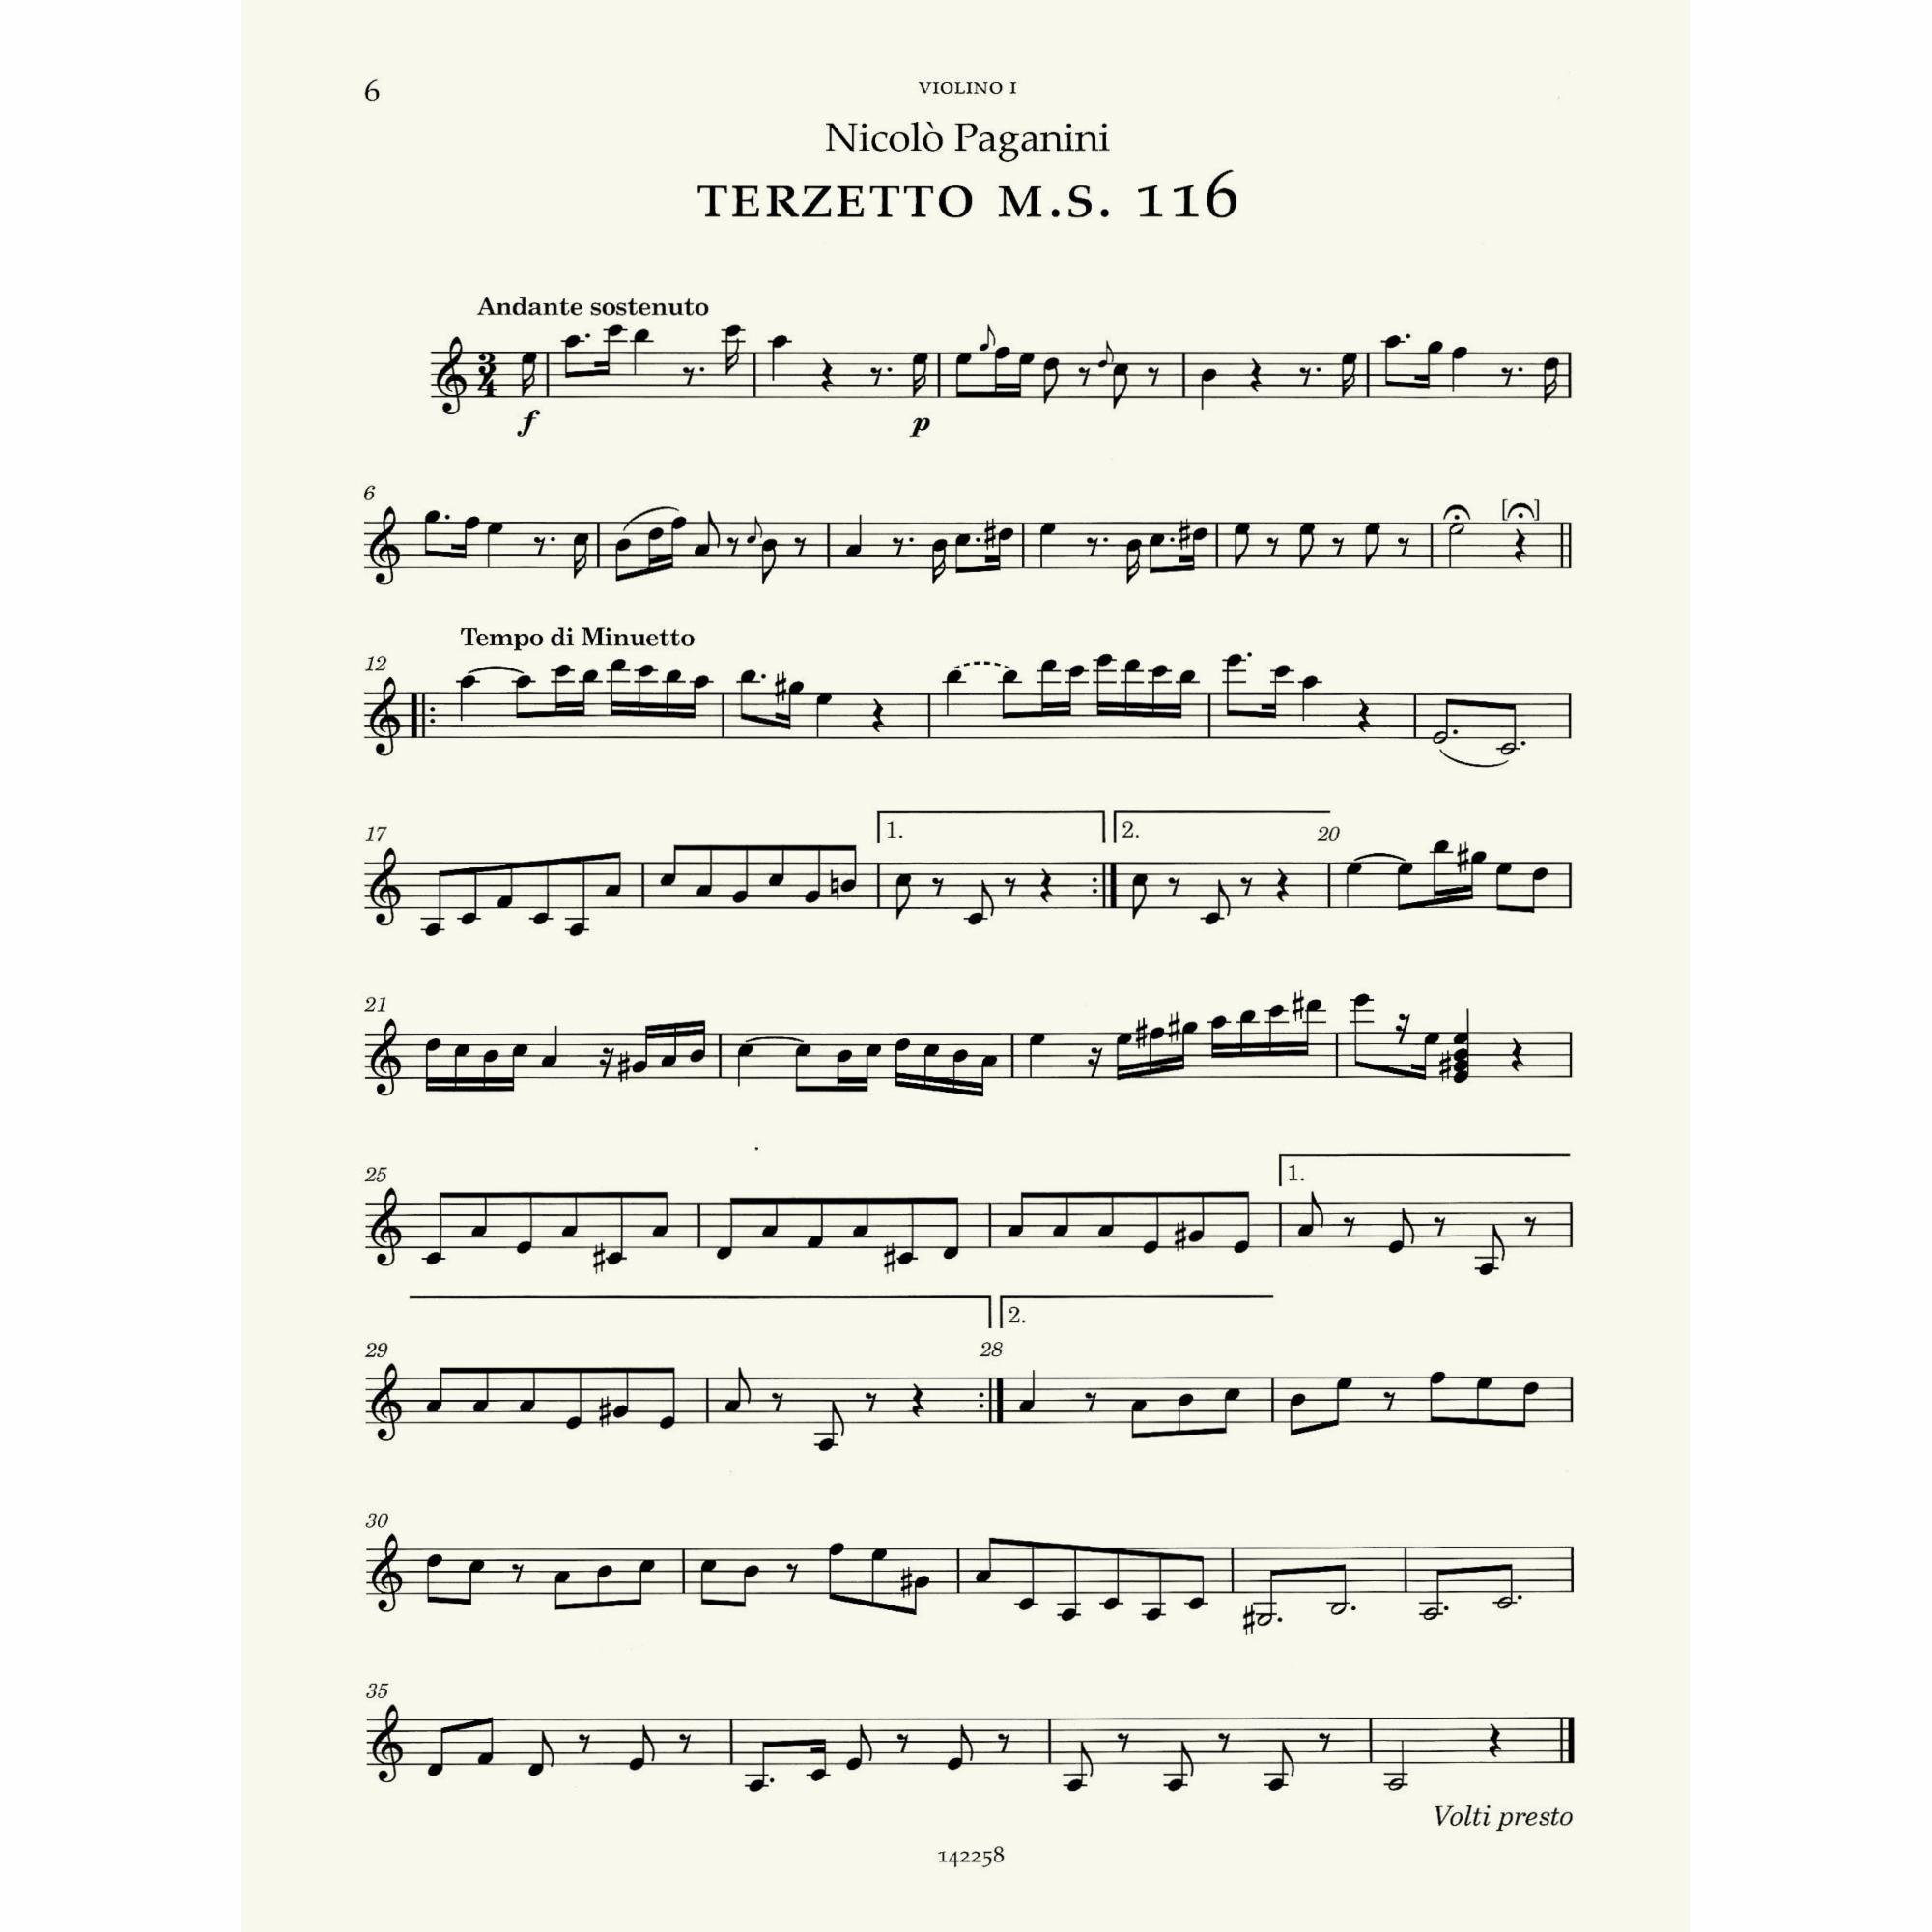 Sample: Violin I (Pg. 6)